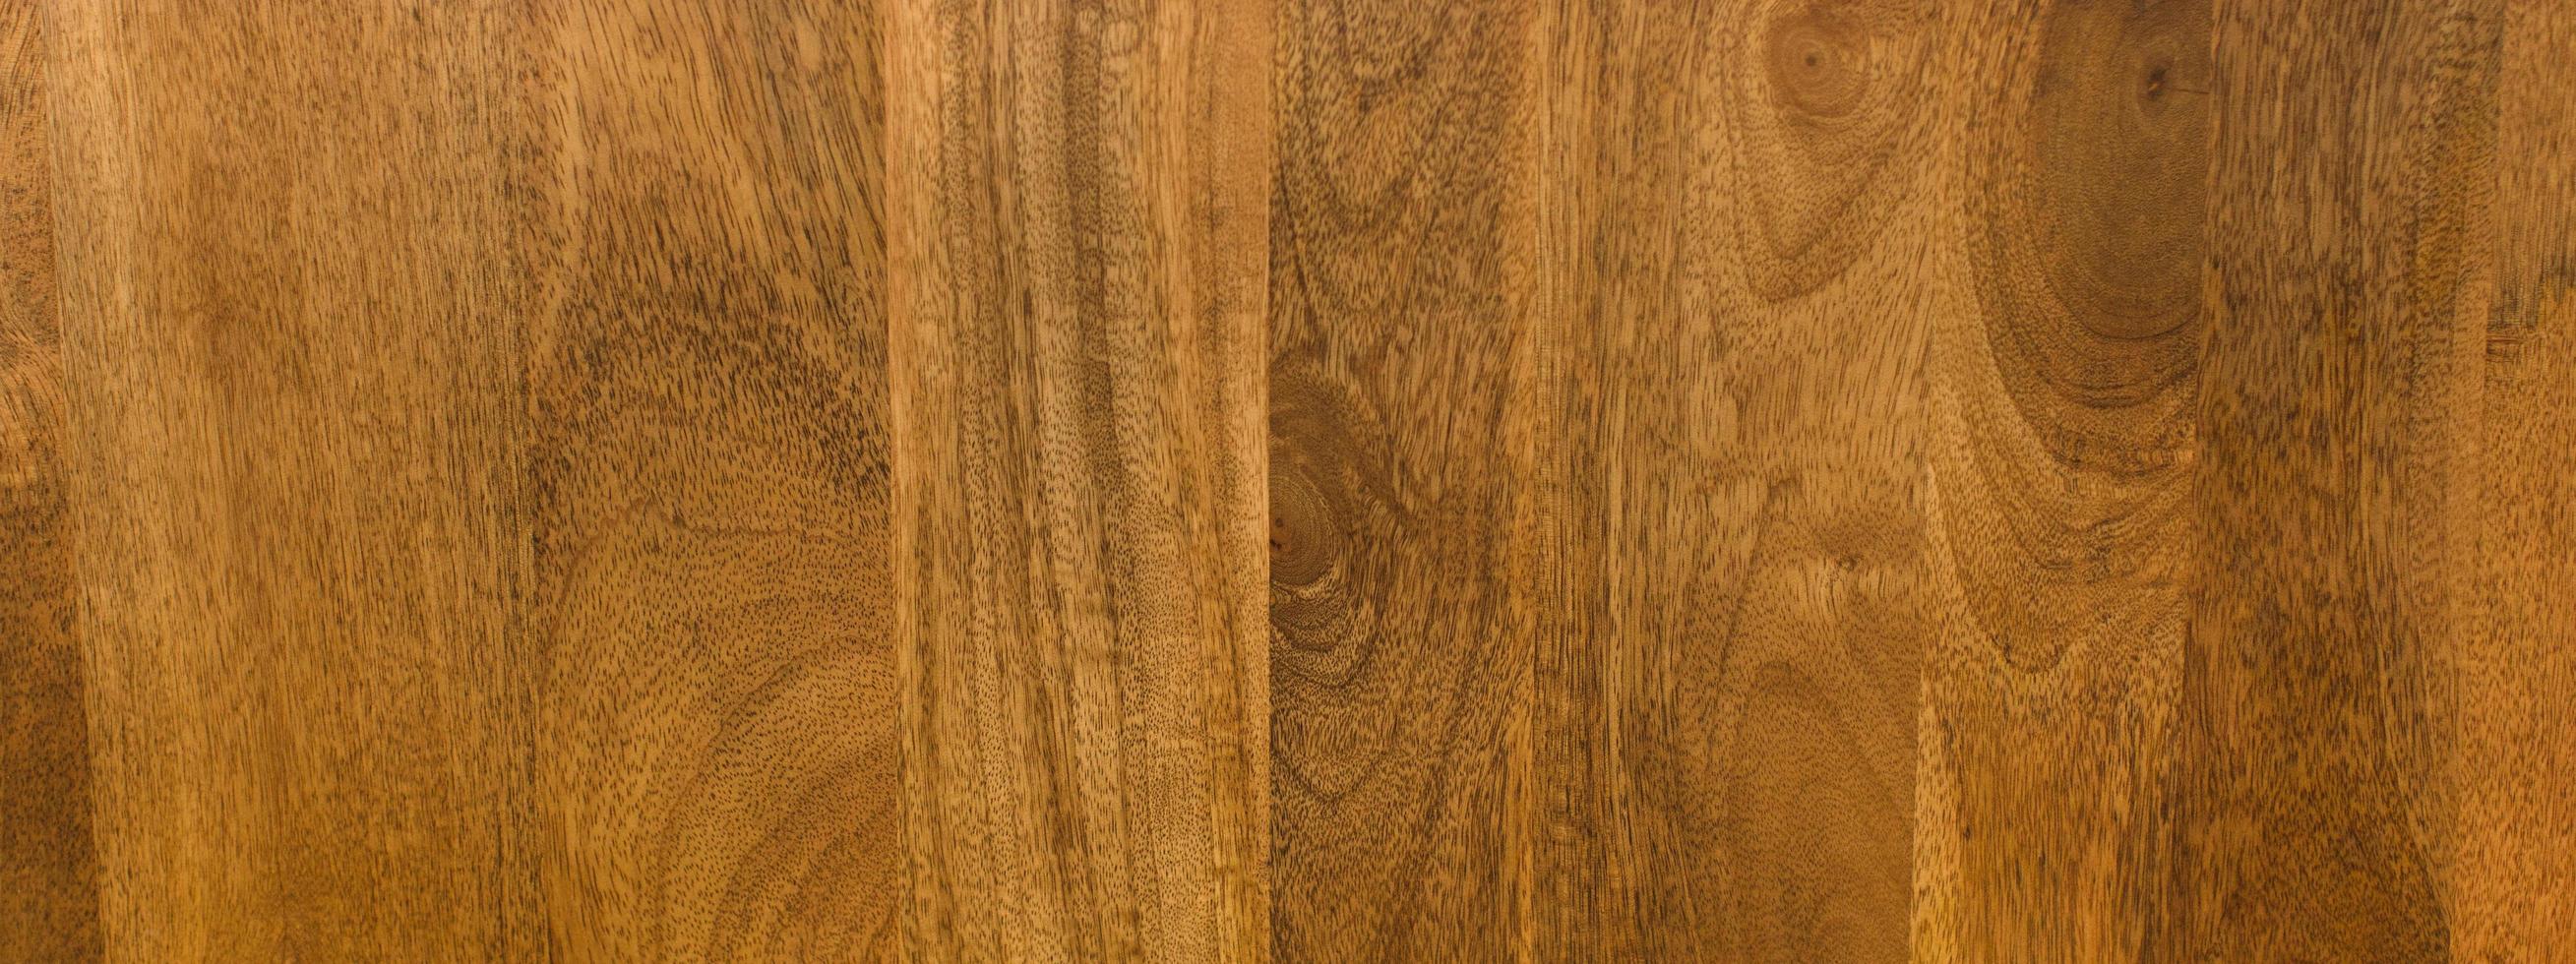 panorama da textura quente dos grãos de madeira foto